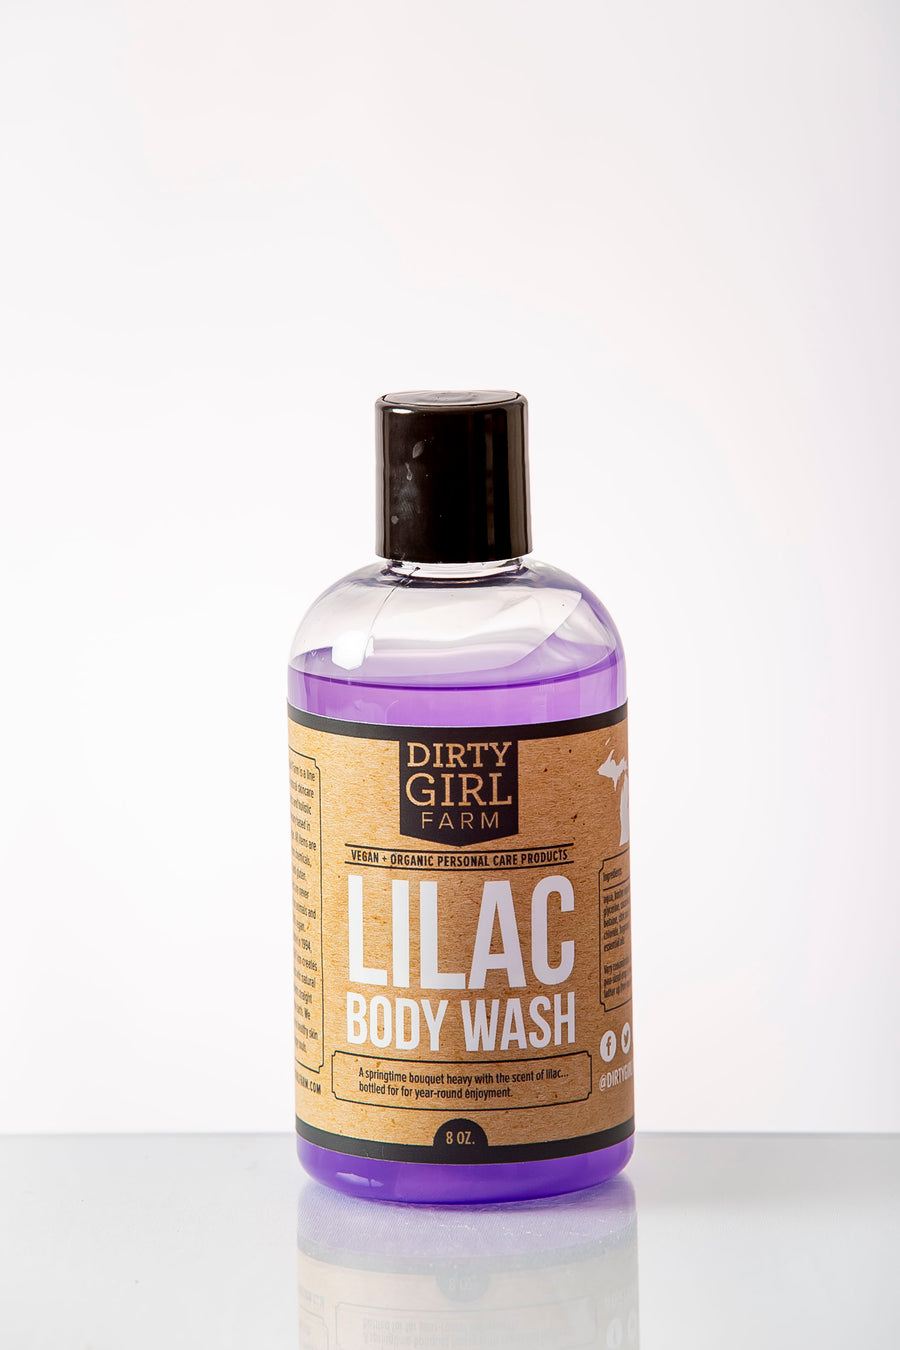 Dirty Girl Farm Lilac Body Wash